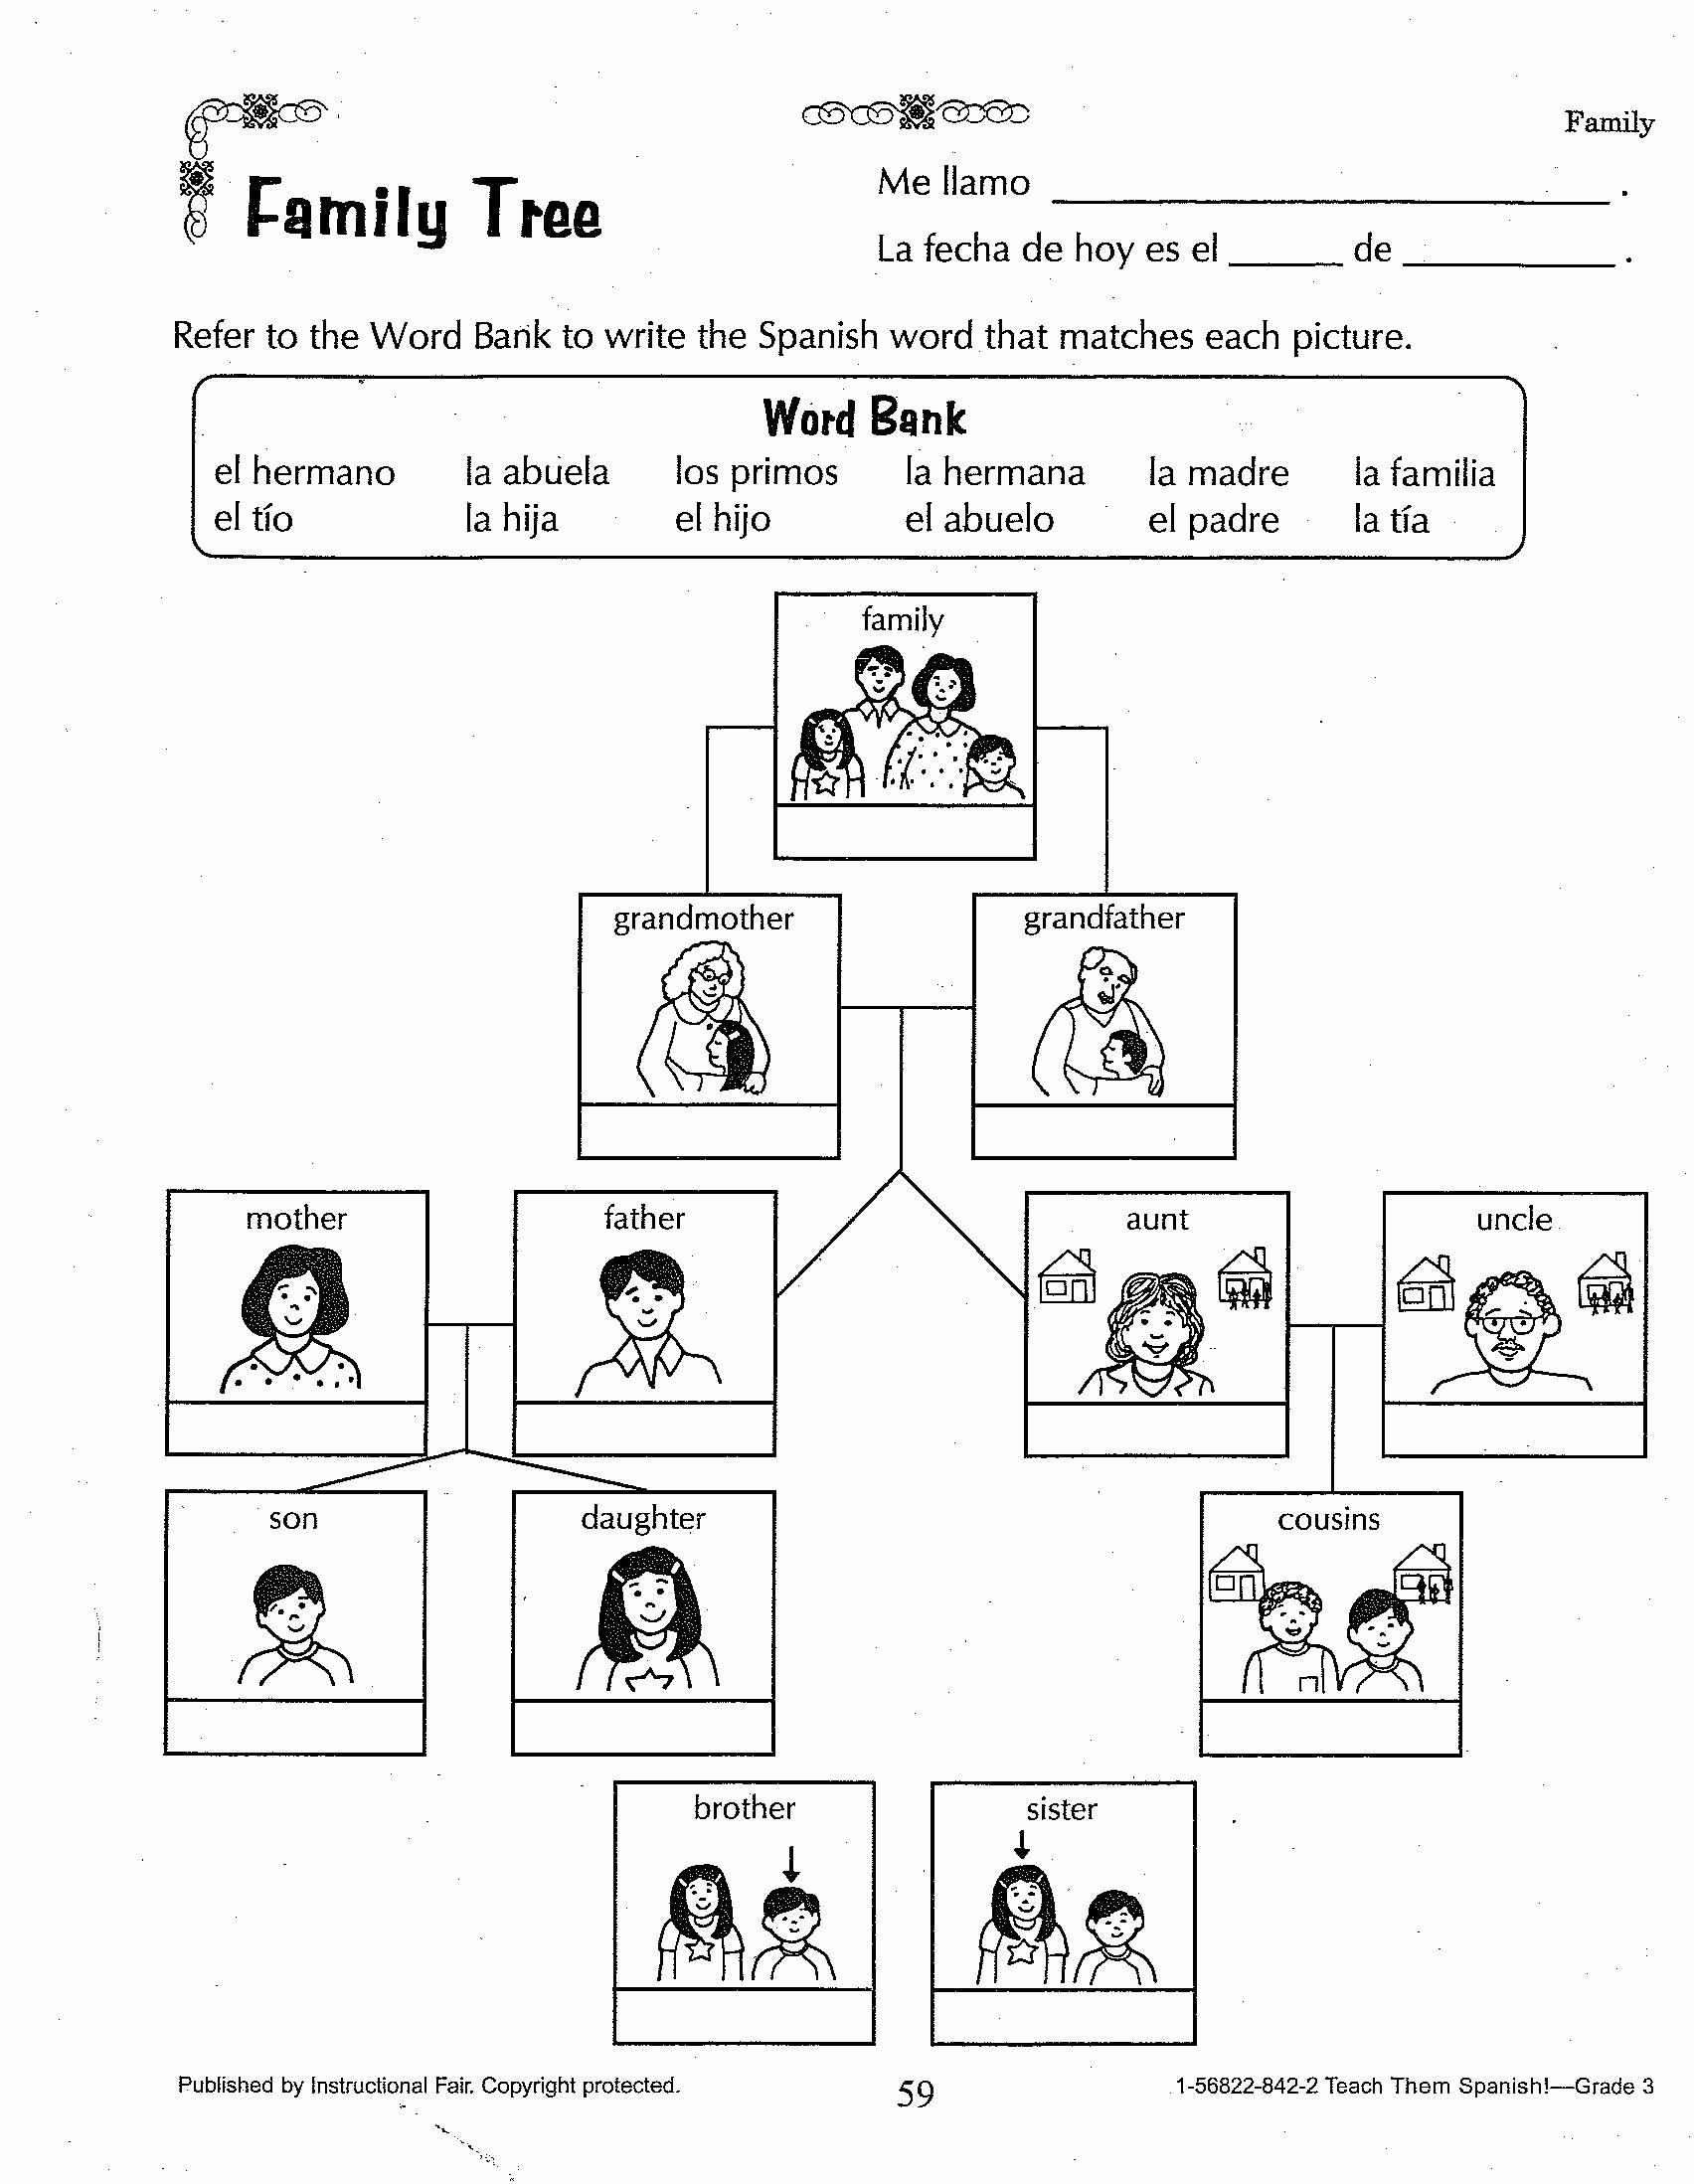 Family Tree Worksheet Printable Best Of New 520 Family Worksheet Genealogy